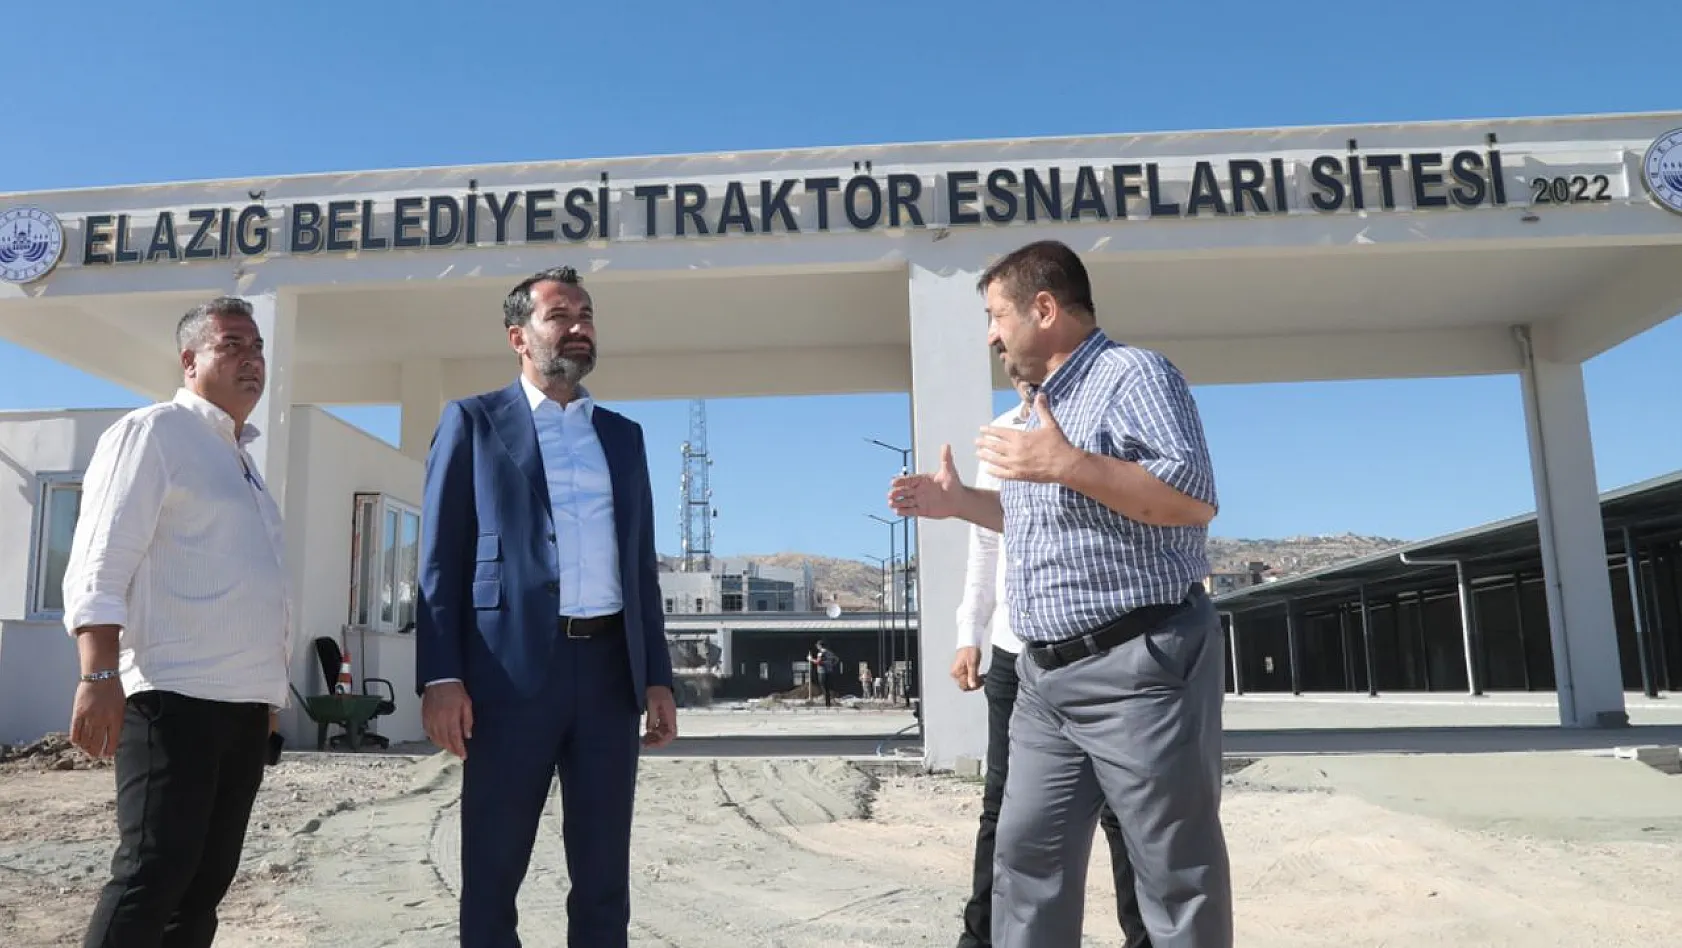 Elazığ Belediyesi Traktör Esnafları Sitesi'nde Çalışmalar Tamamlanmak Üzere